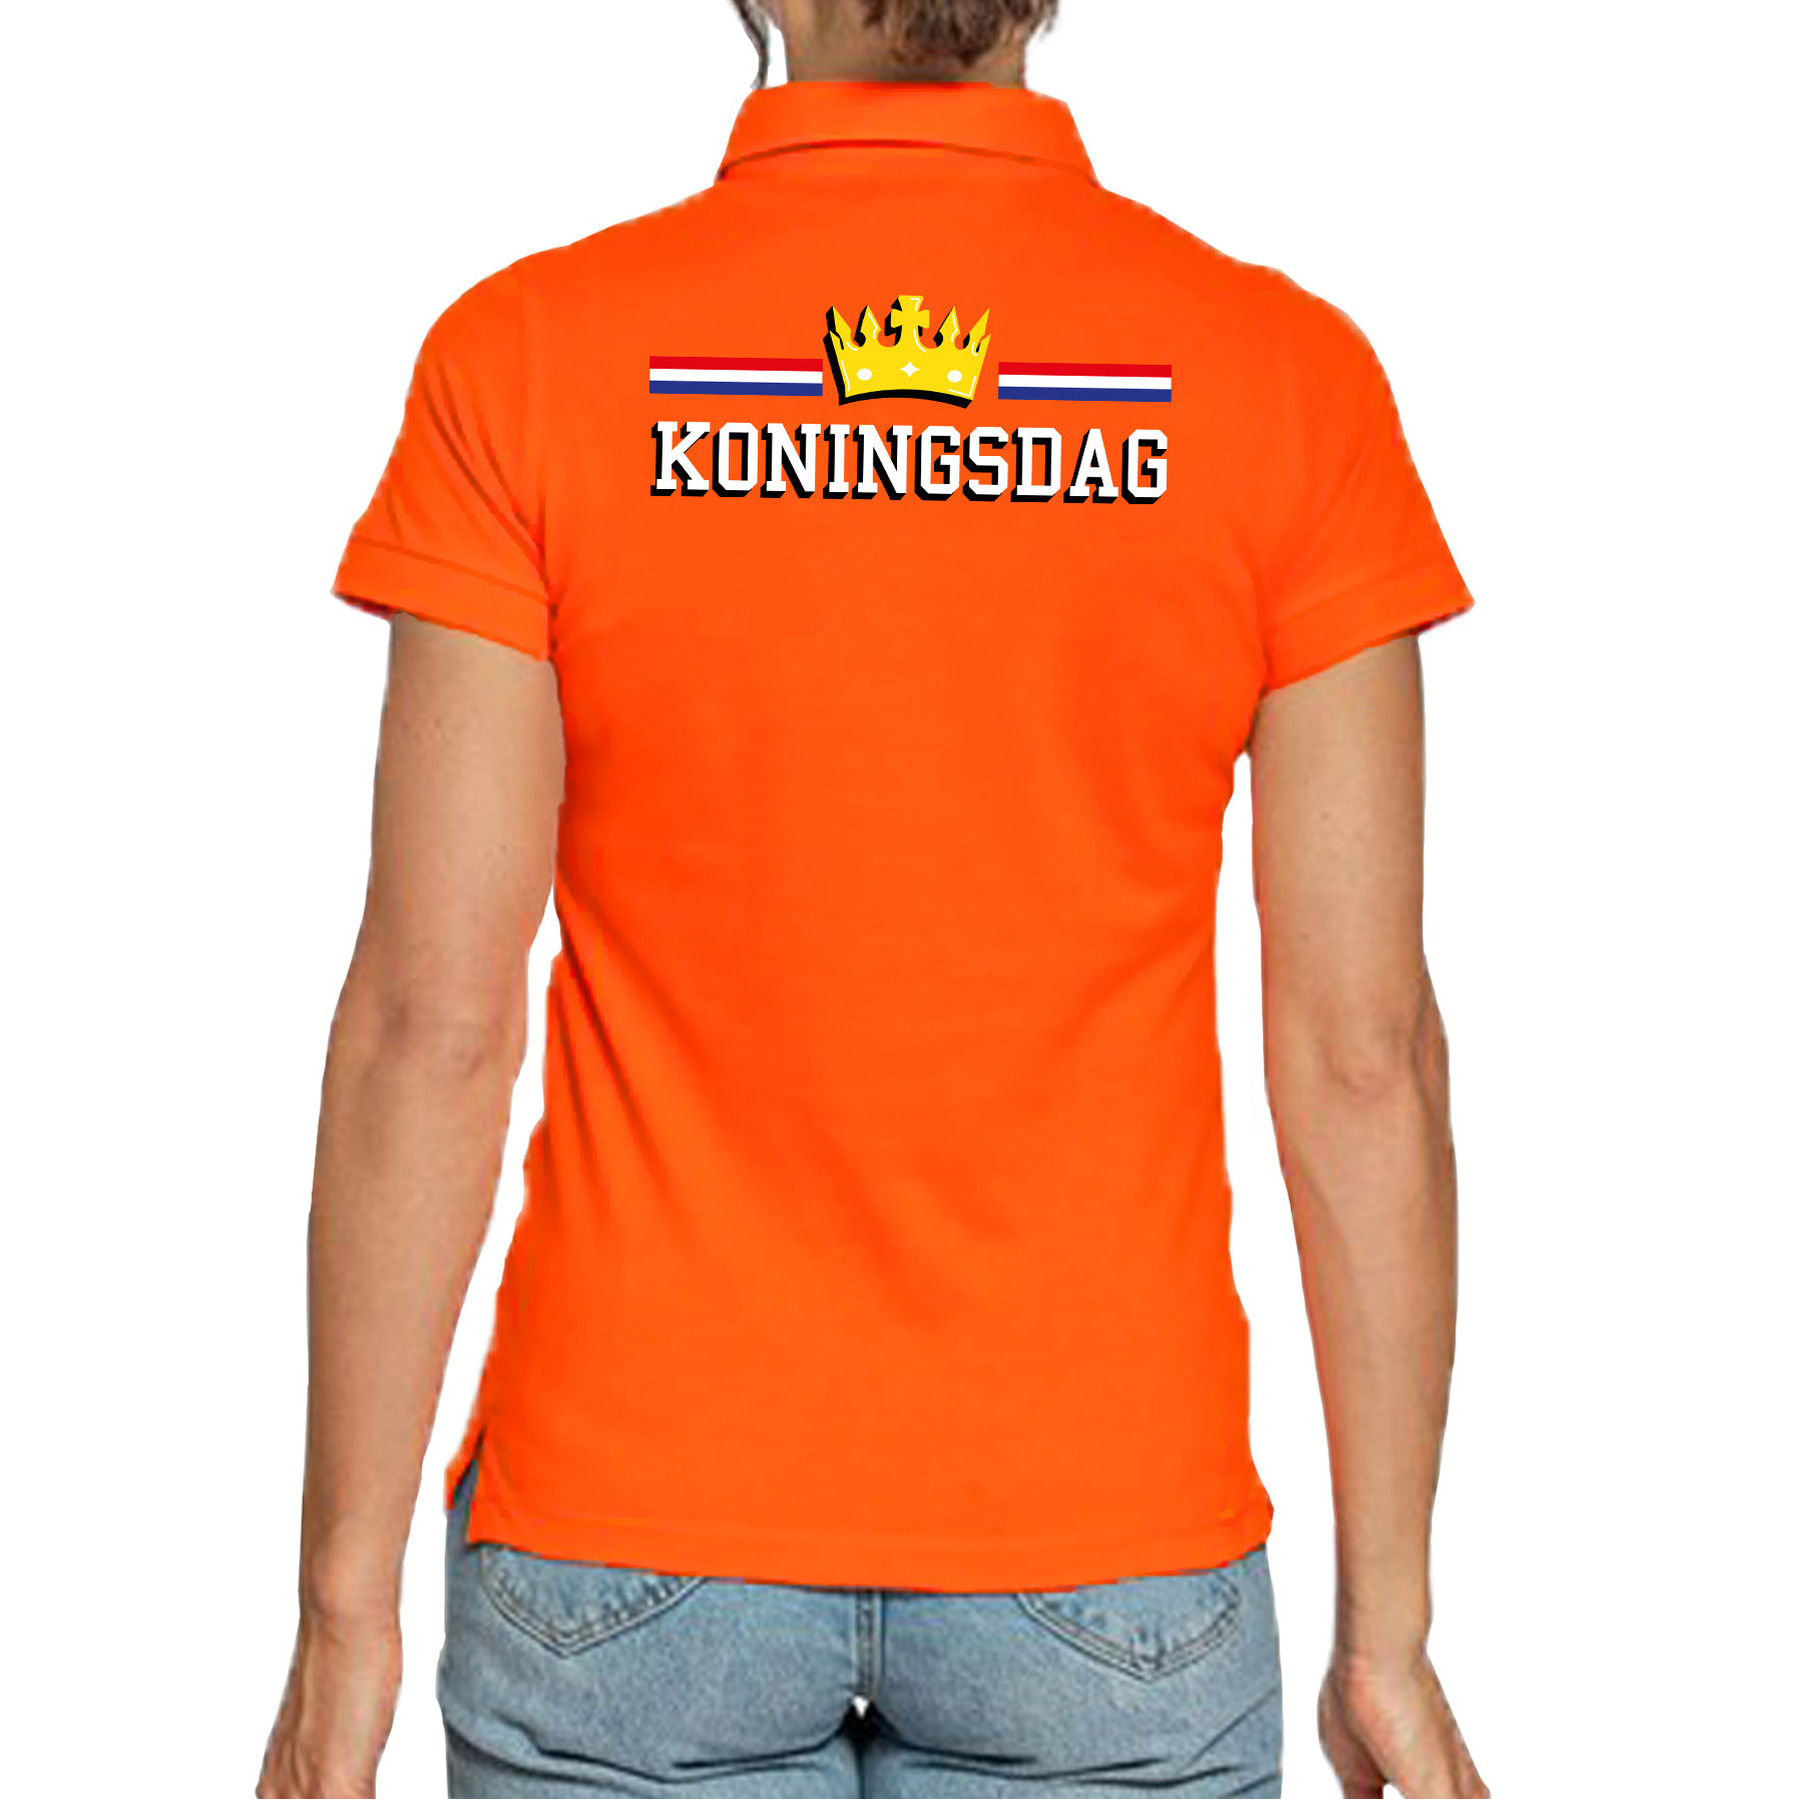 laden hemel Vervagen Koningsdag polo shirt oranje voor dames - Koningsdag polo shirts bestellen?  | Shoppartners.nl